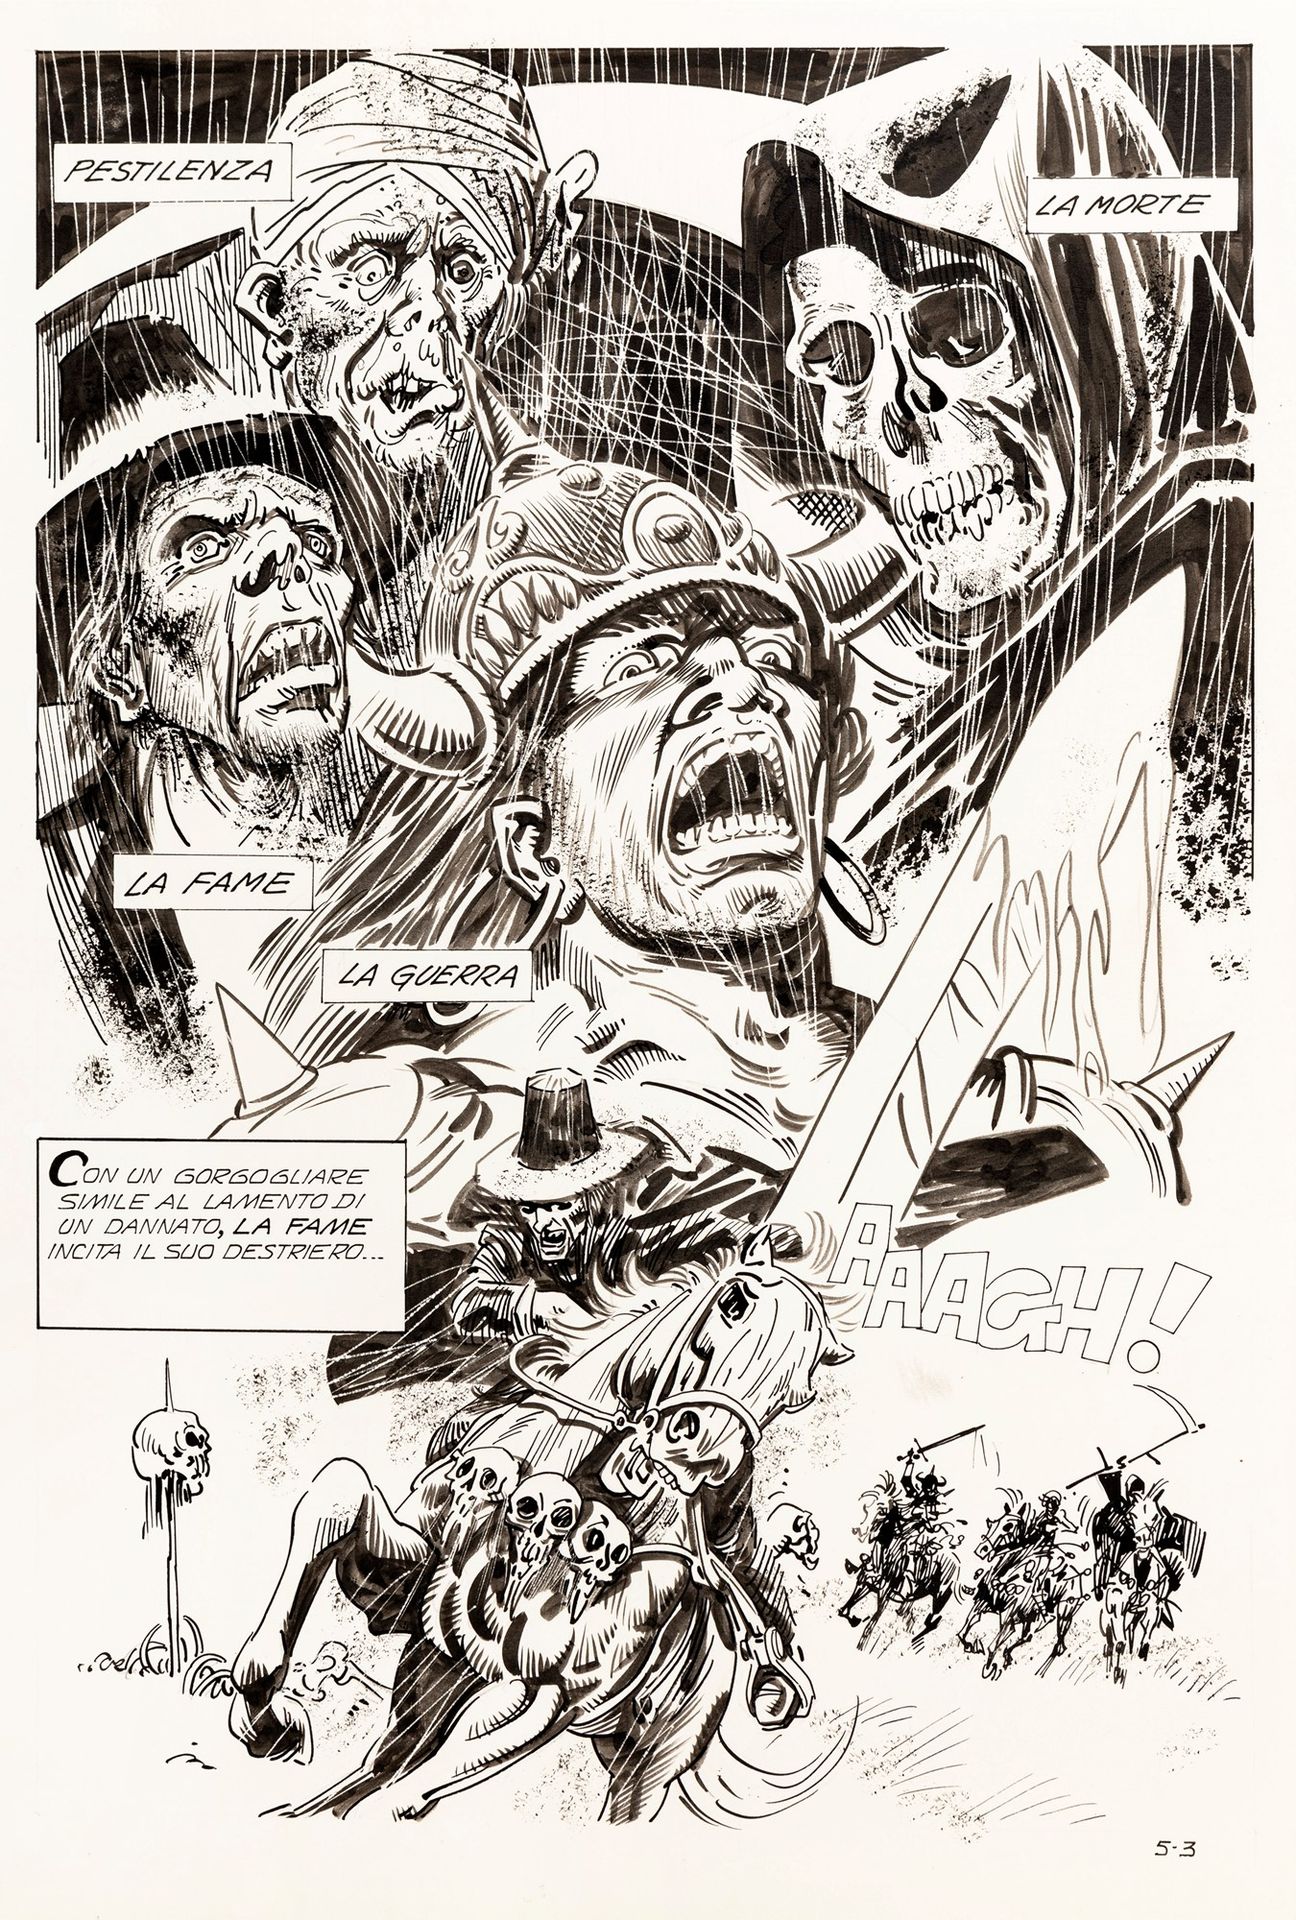 Vladimiro Missaglia Fumetti dell'Orrore - I Cavalieri dell'Apocalypse, 1979

cra&hellip;